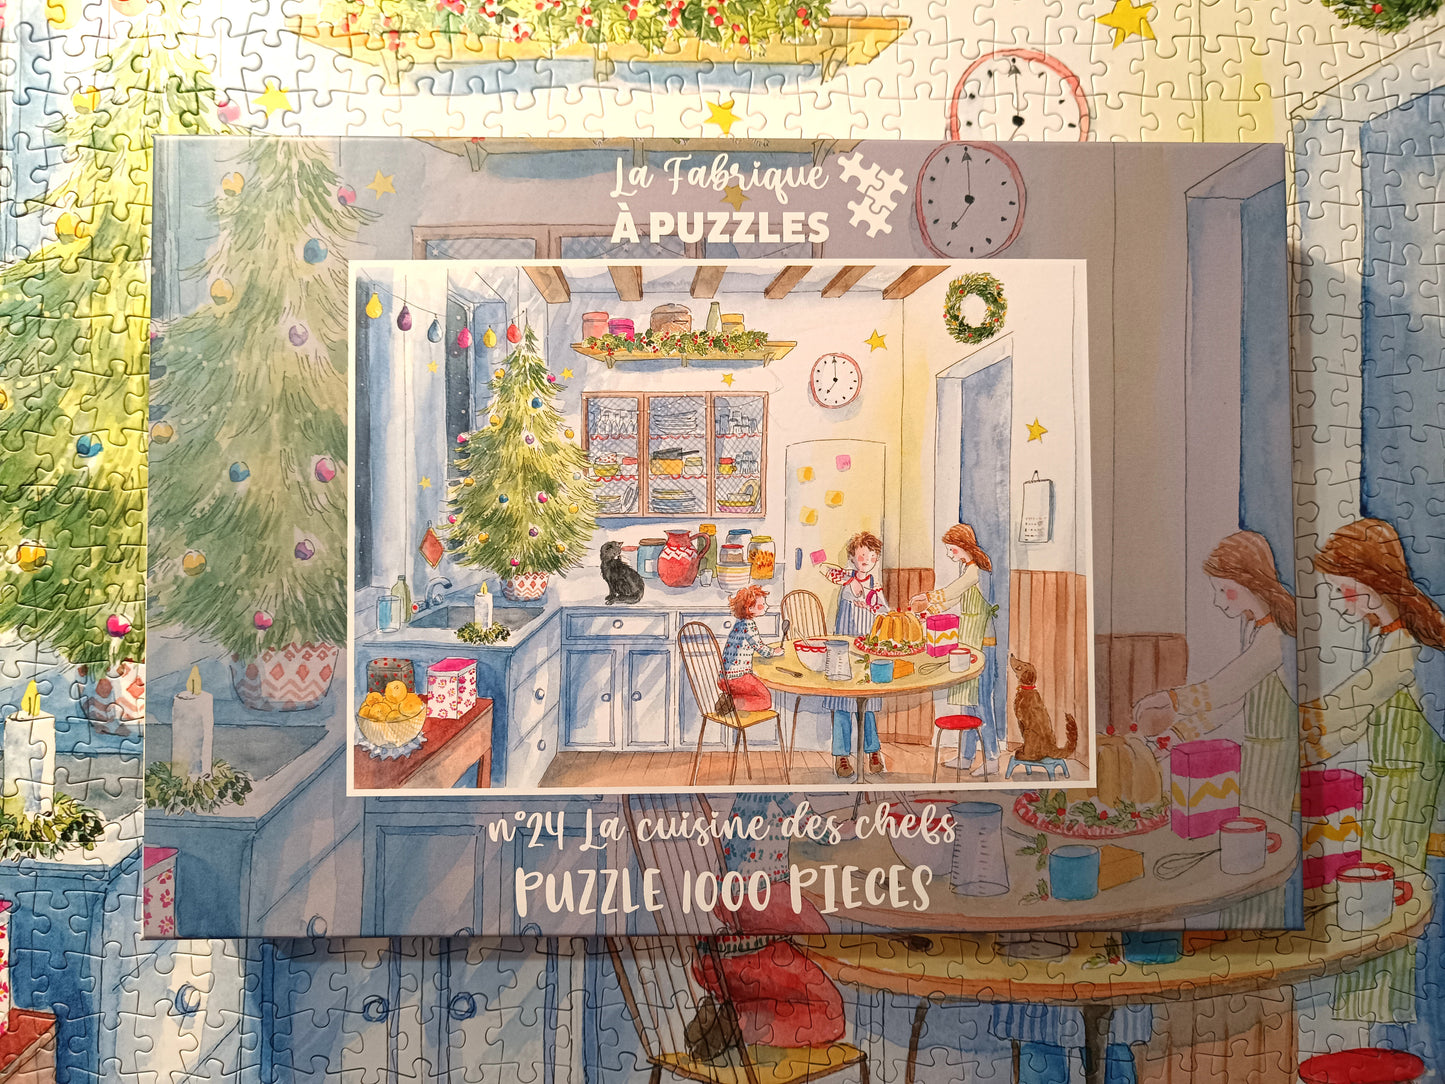 Puzzle n°24 "La cuisine des chefs" 1000 pieces by Delphine Balme